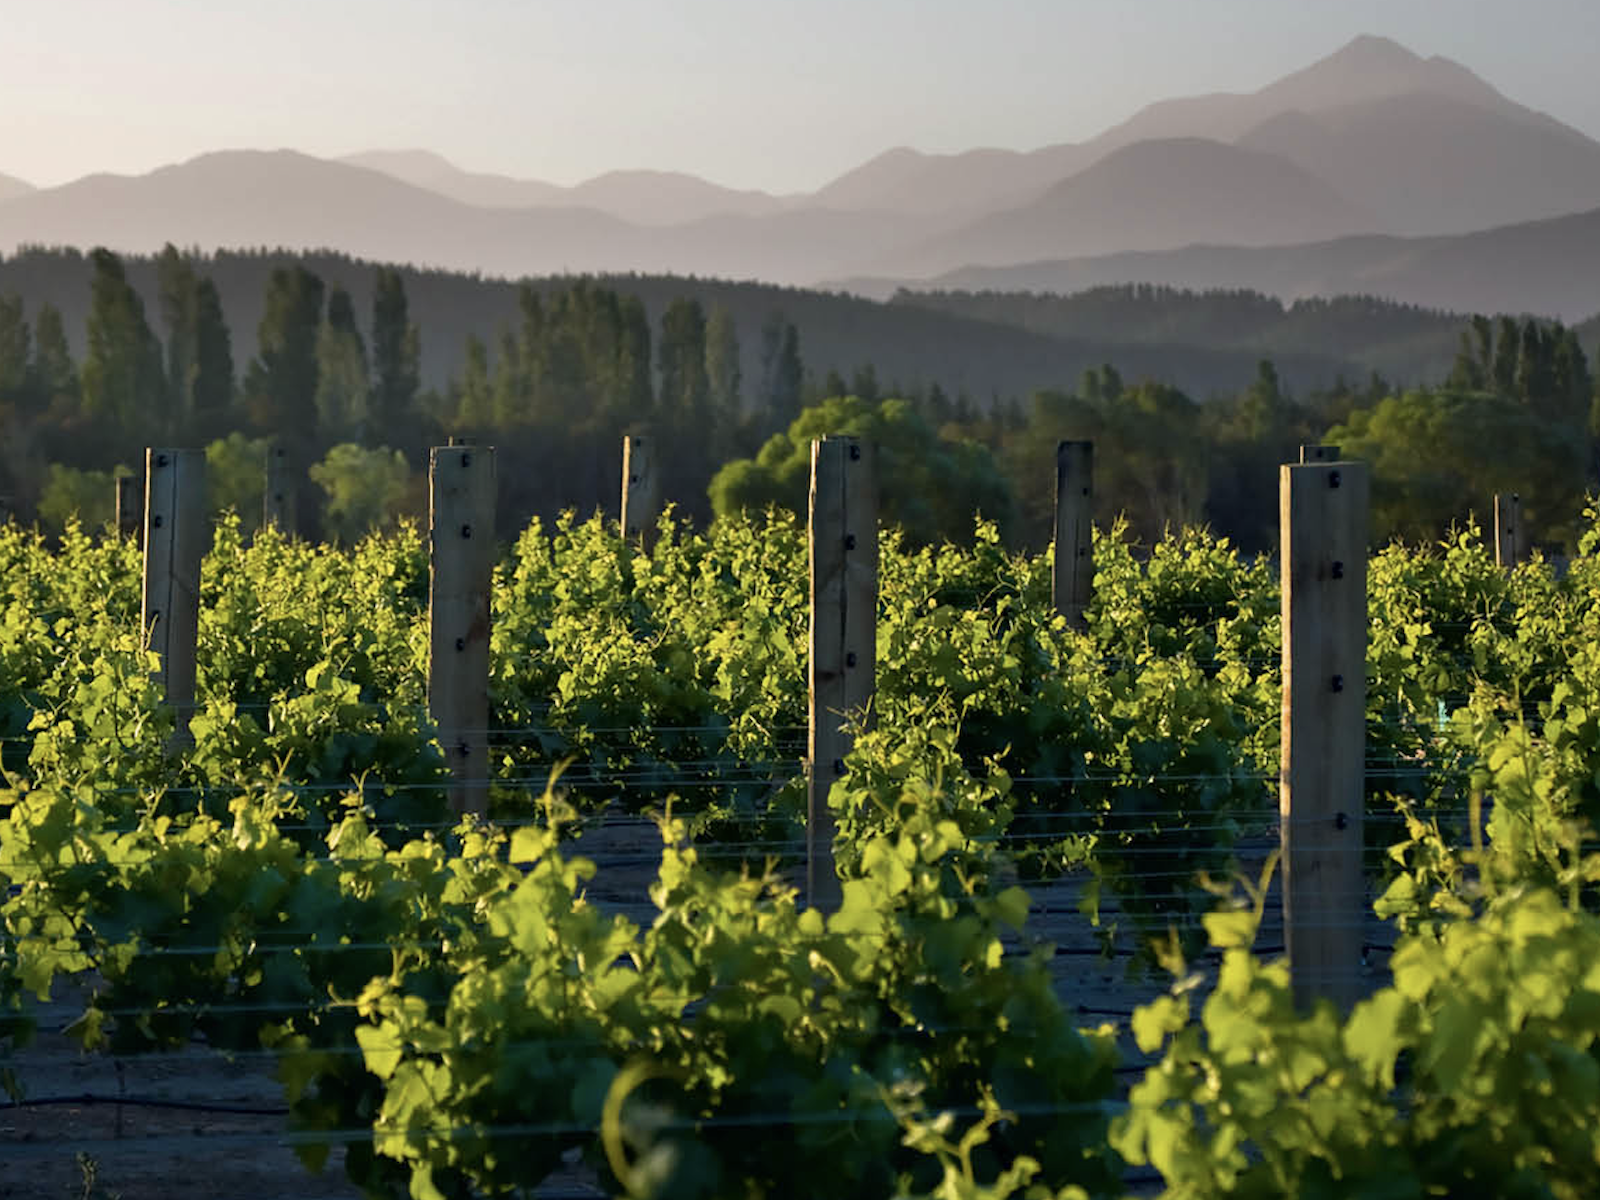 Sauvignon Blanc vineyards in Marlborough, New Zealand with the Richmond Range&nbsp;behind.